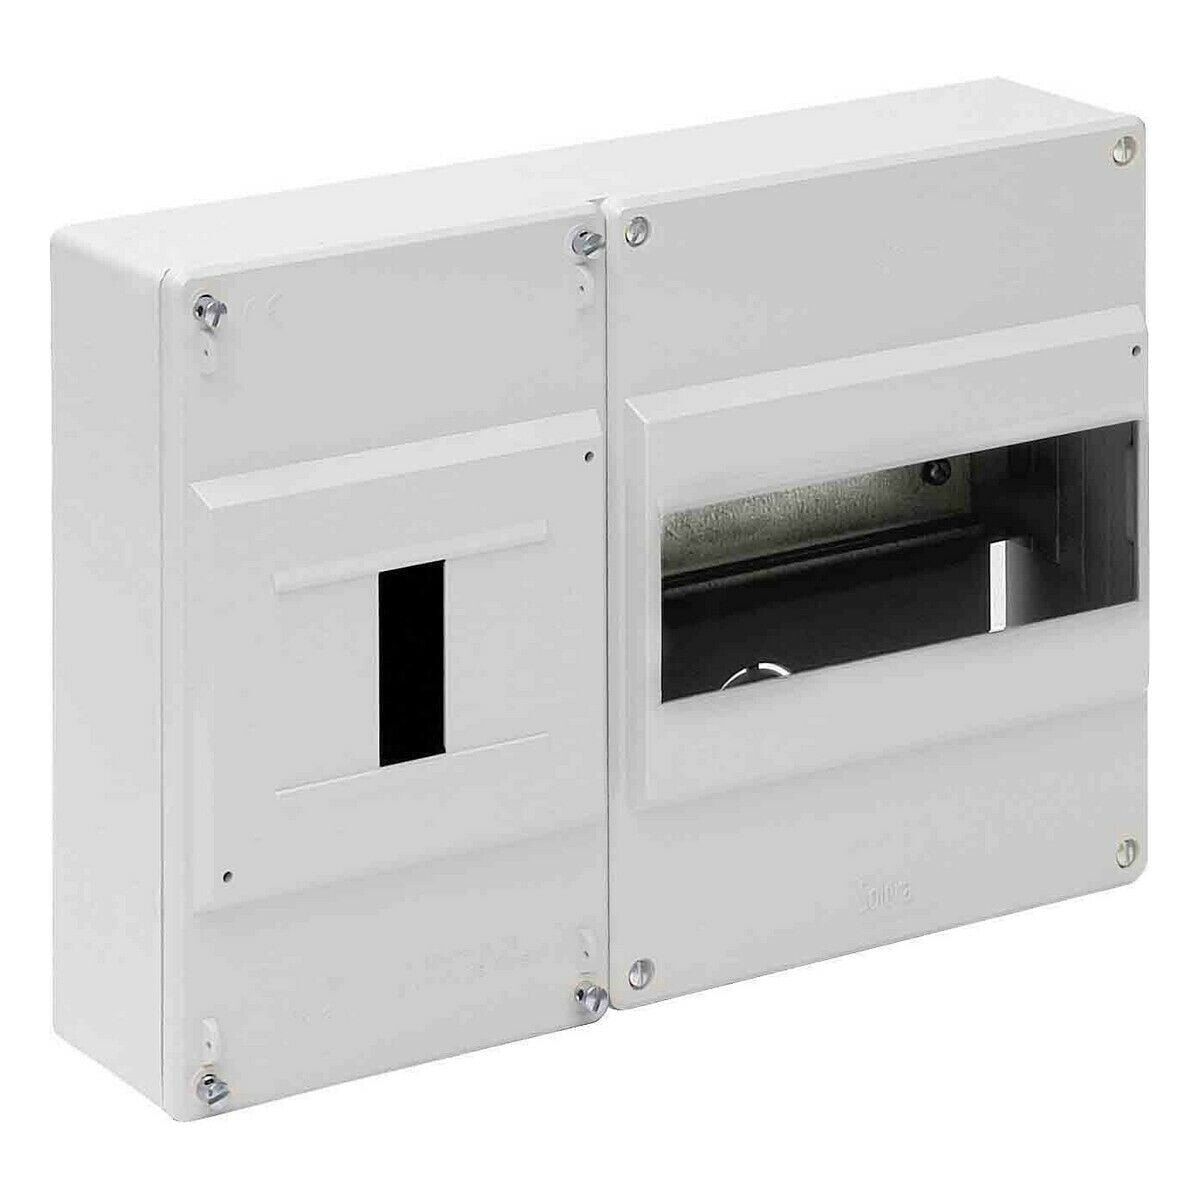 Коробка для записи Solera 697b Термоусадочная упаковка Белый термопласт 227 x 188 x 55 mm